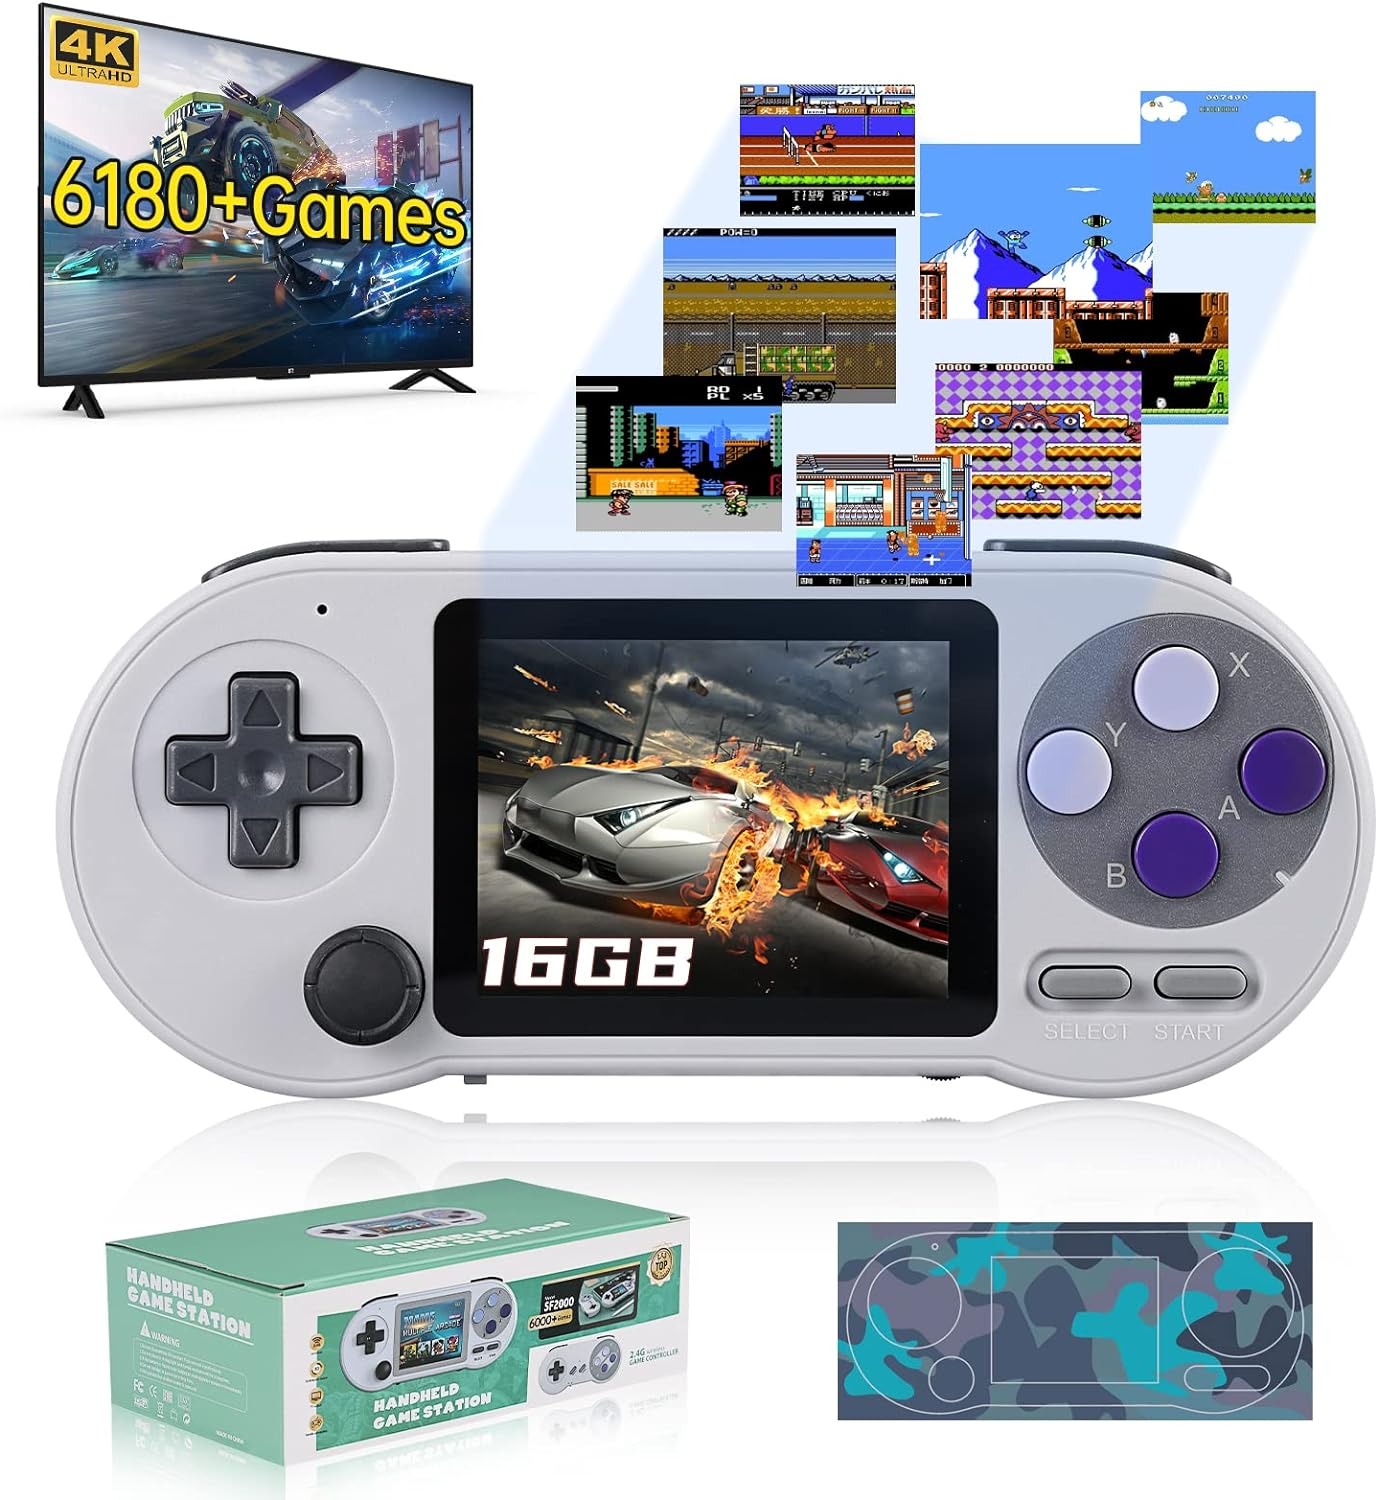 Consola De Video Juegos Handheld Game  Station SF2000